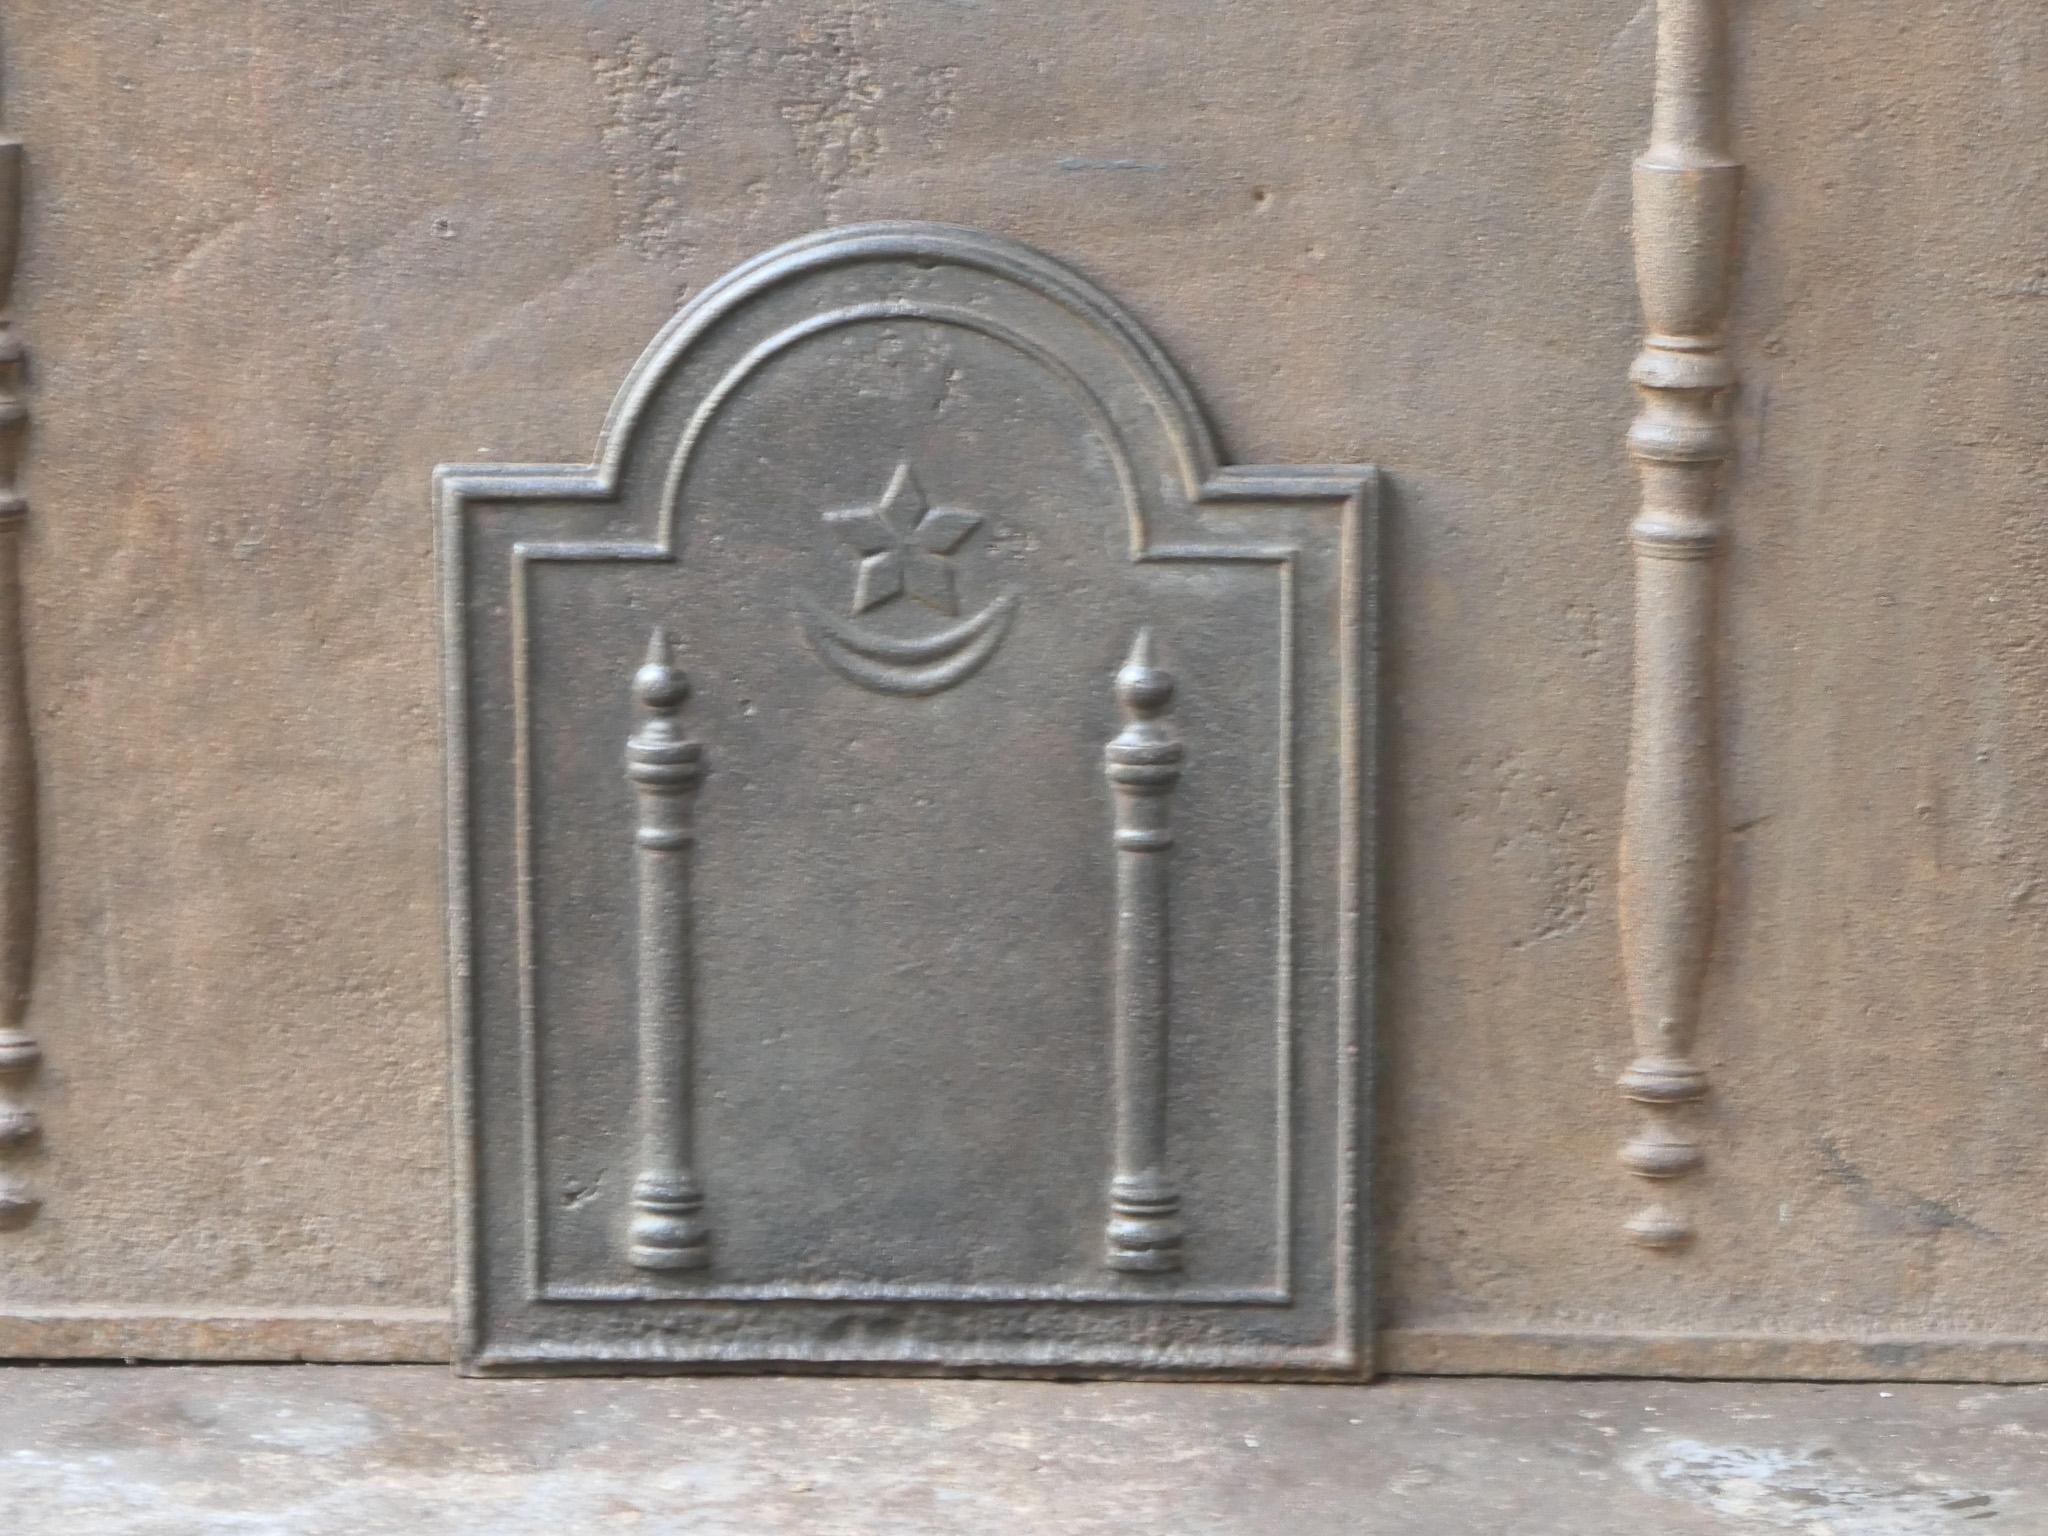 Plaque de cheminée néoclassique française du 18e - 19e siècle avec deux piliers de la liberté. Les piliers symbolisent la valeur liberté, l'une des trois valeurs de la Révolution française. 

La plaque de cheminée est en fonte et a une patine brune